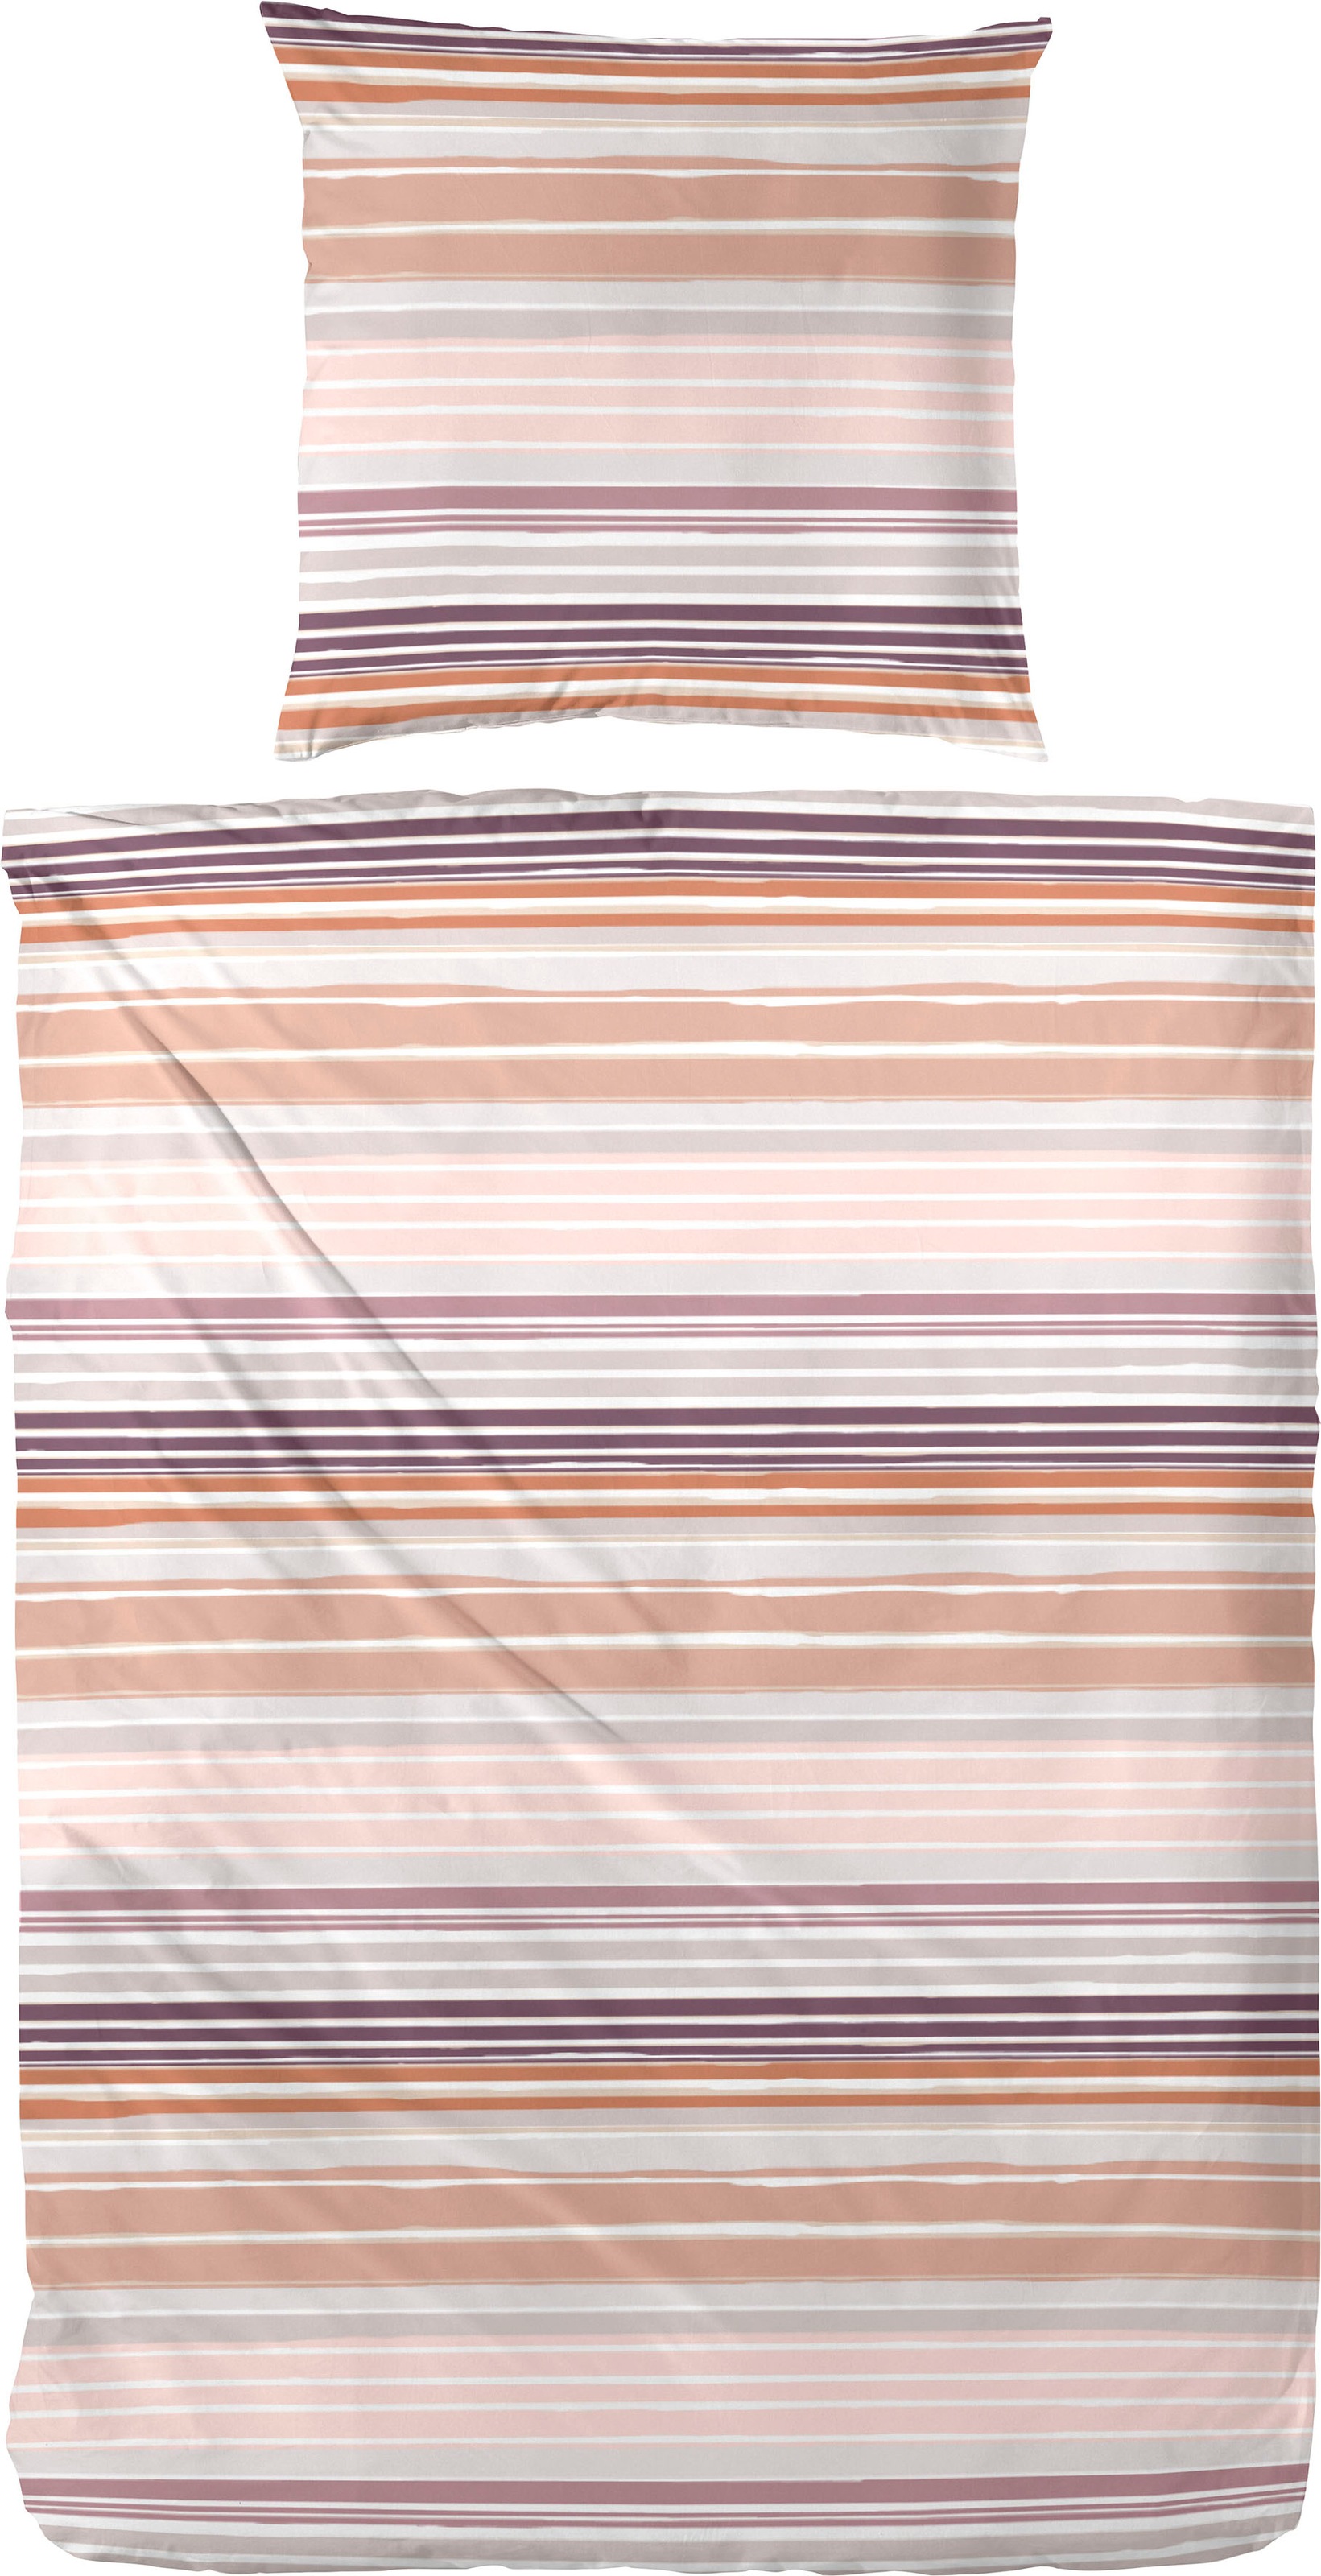 Primera Bettwäsche "Wavy Stripe", (2 tlg.), mit modernen Streifen in frischen Farben